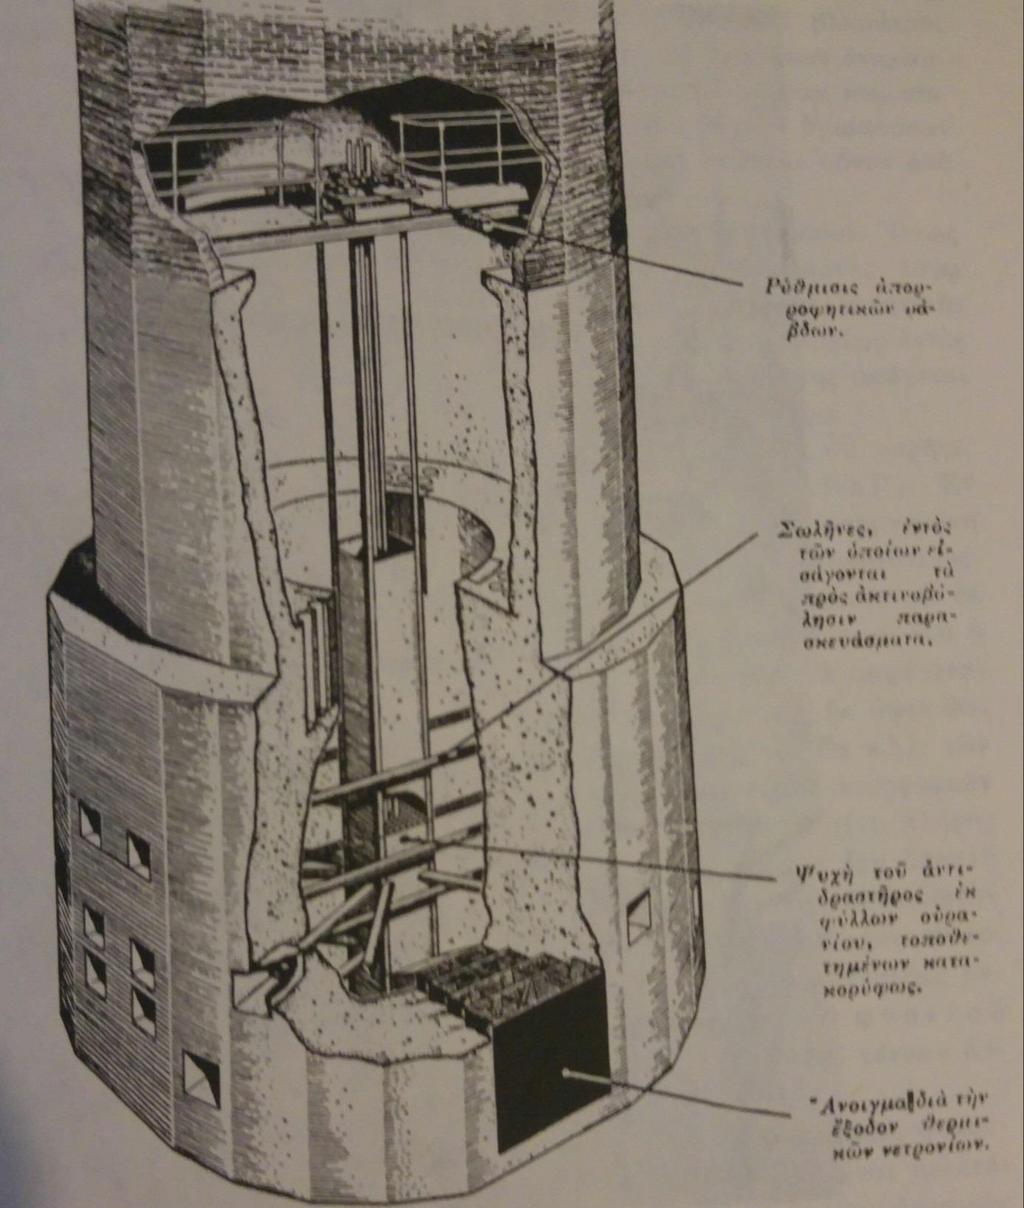 στον αντιδραστήρα, υπάρχουν οι πλάκες ασφαλείας (9). Οι πλάκες ασφαλείας βρίσκονται μέσα στο βαρύ ύδωρ και διακόπτουν αν χρειαστεί αυτόματα τη λειτουργία του αντιδραστήρα.